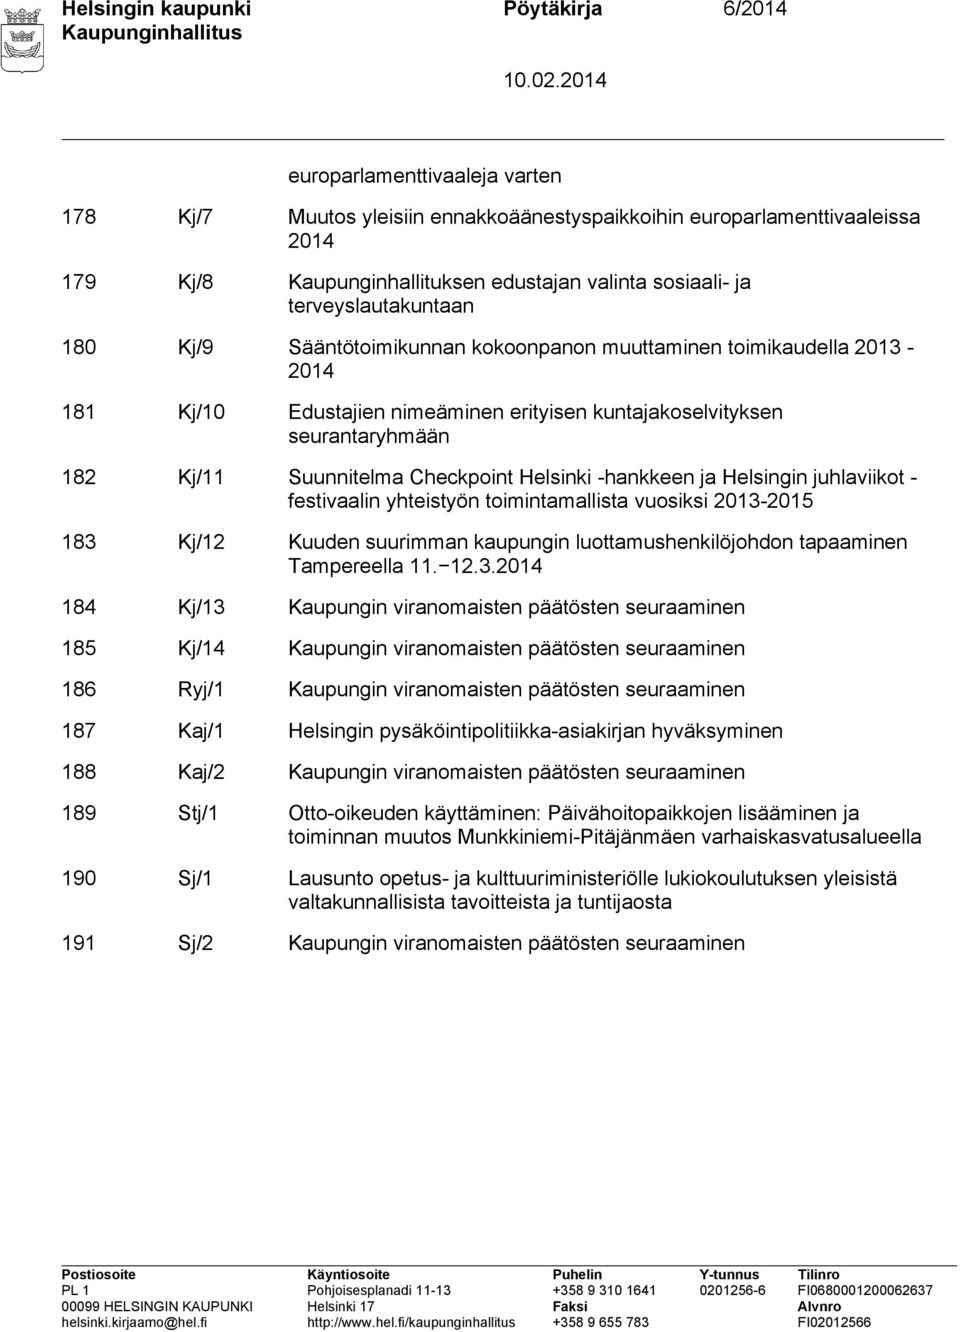 Suunnitelma Checkpoint Helsinki -hankkeen ja Helsingin juhlaviikot - festivaalin yhteistyön toimintamallista vuosiksi 2013-2015 183 Kj/12 Kuuden suurimman kaupungin luottamushenkilöjohdon tapaaminen